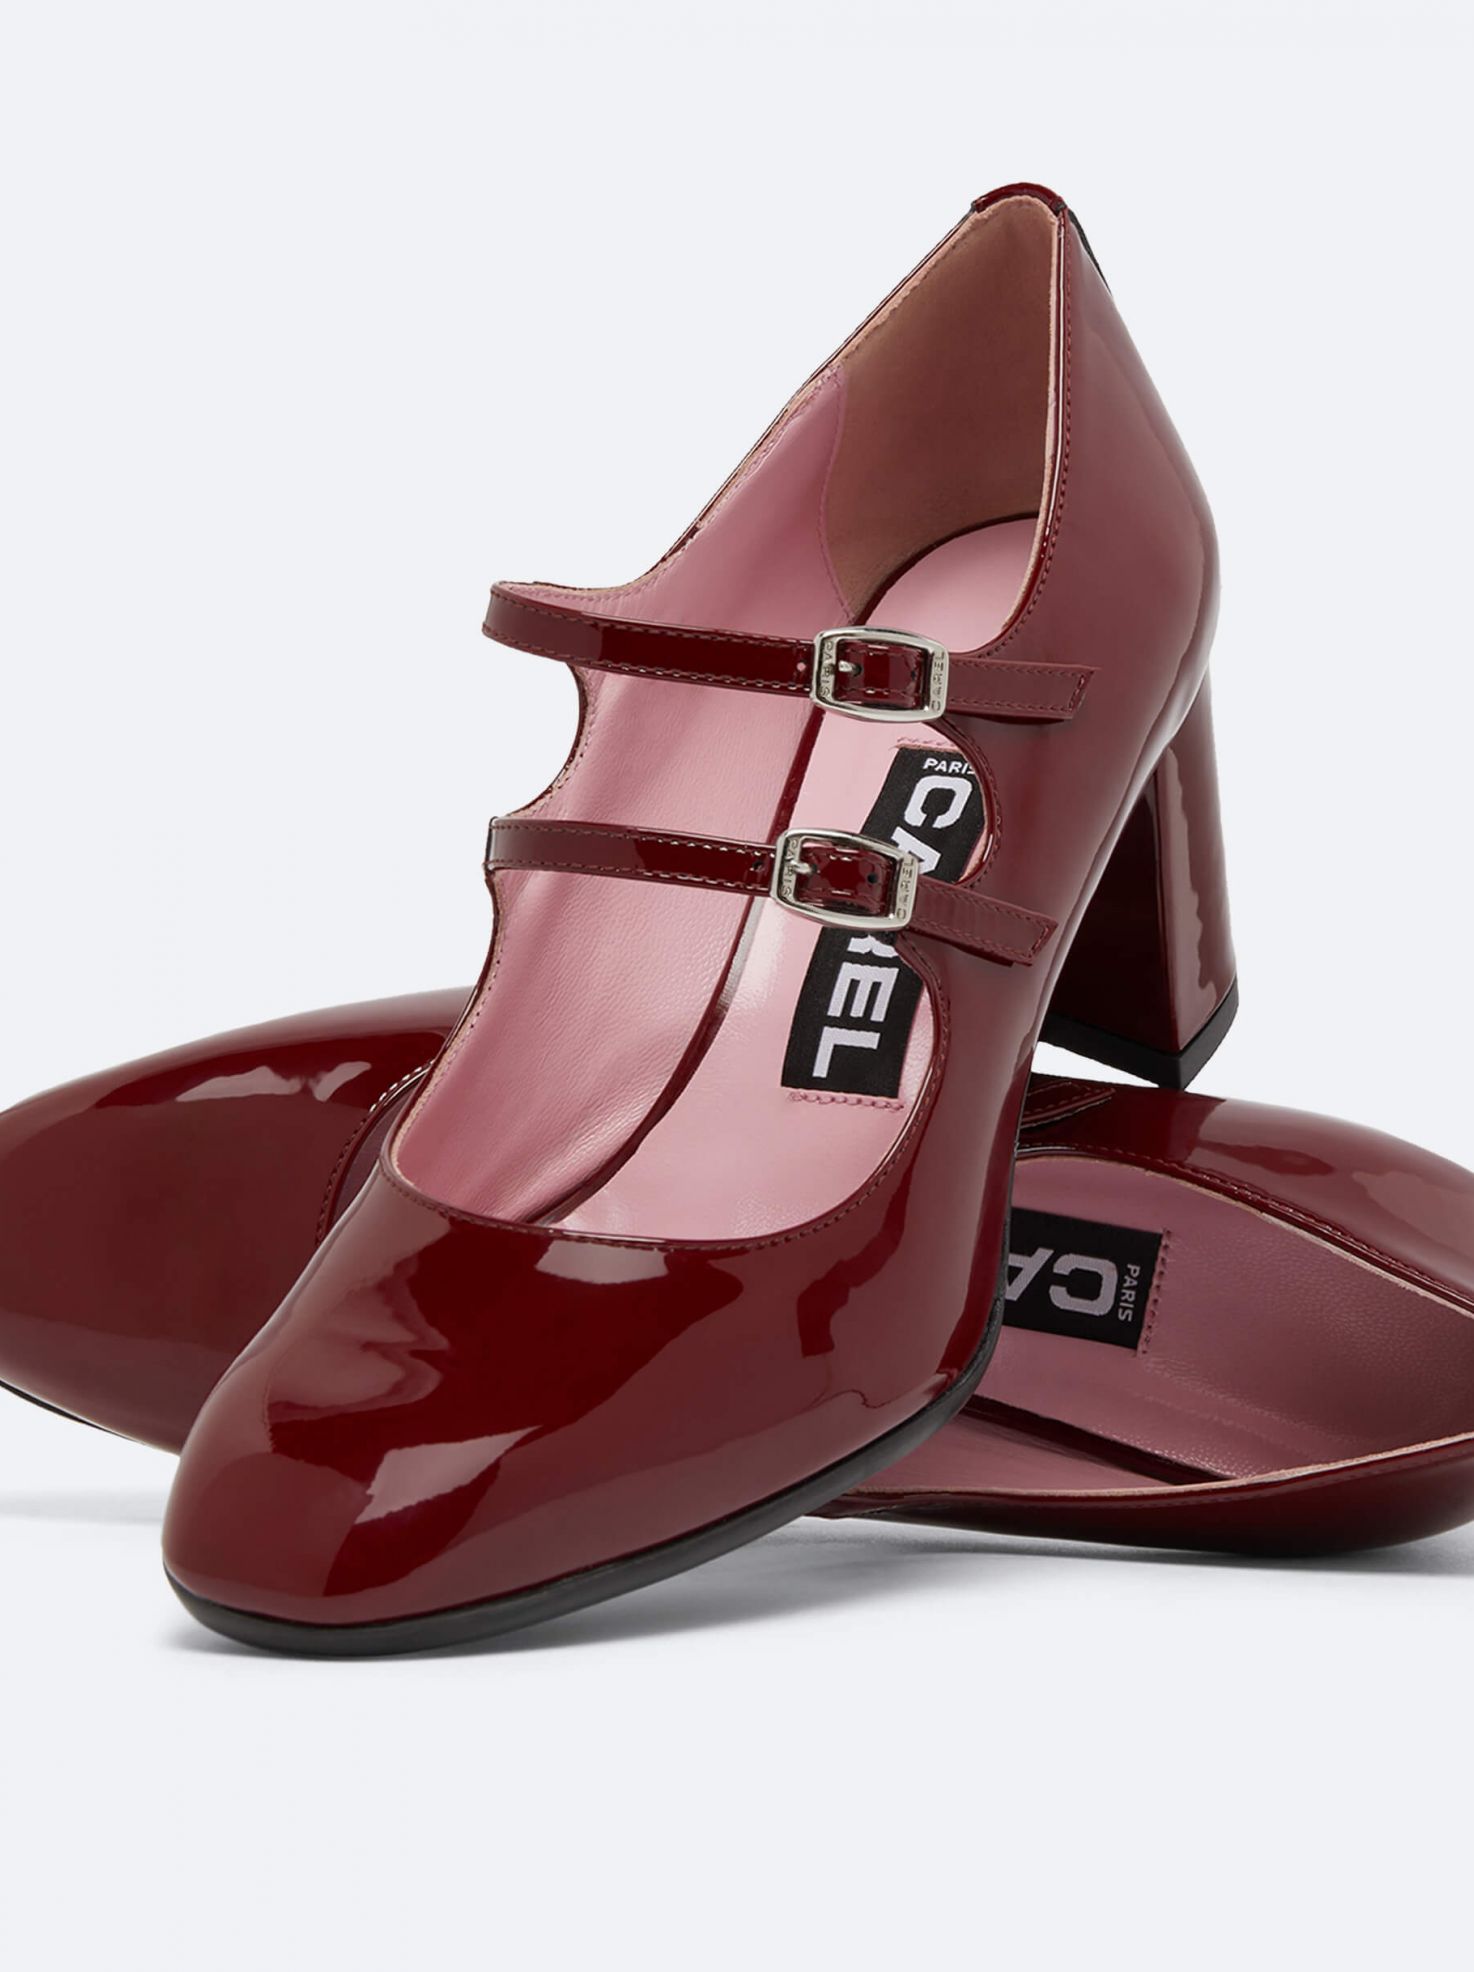 New collection - Shoes for Women | Carel Paris (4)